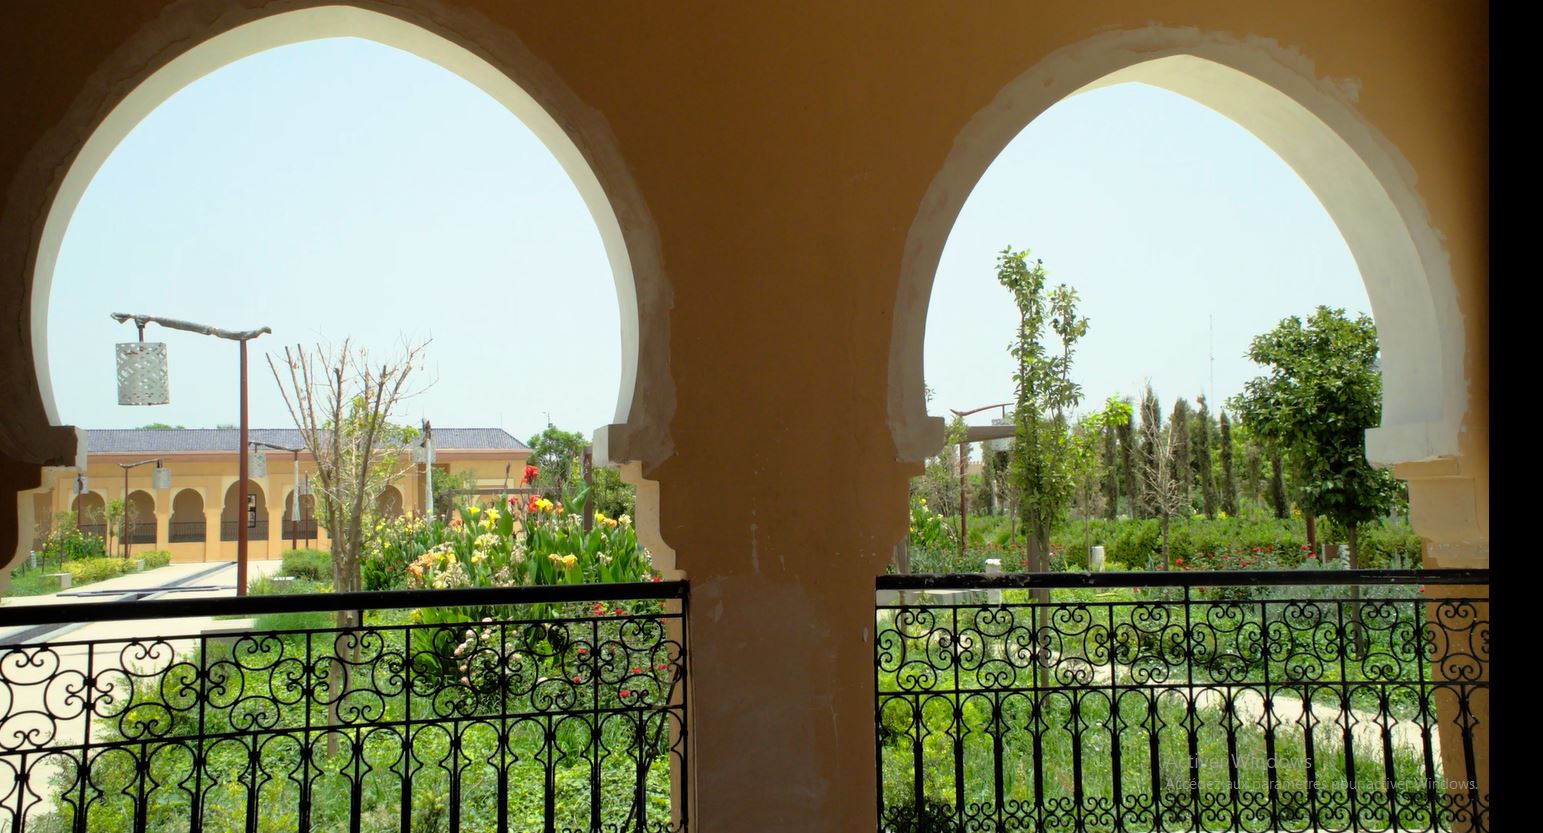 Réhabilitation urbaine des quartiers de la ville de Marrakech